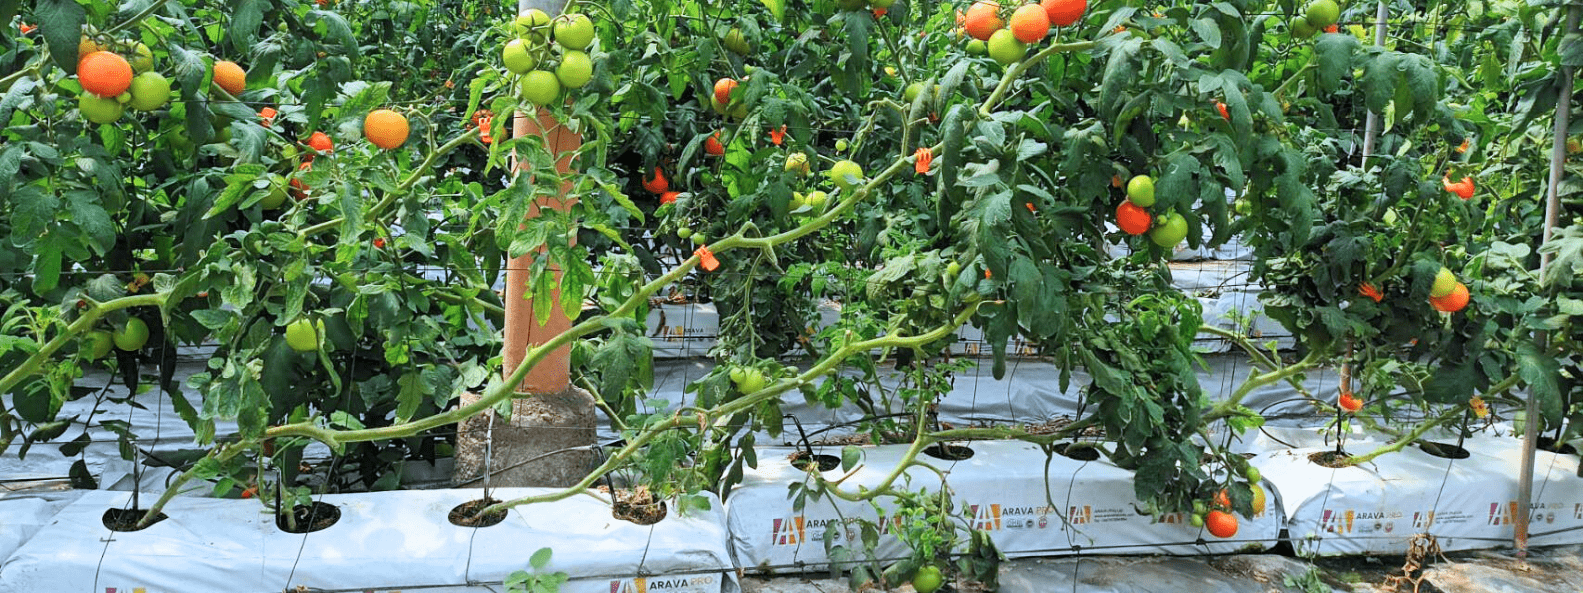  Strawberries grown in Arava grow bags